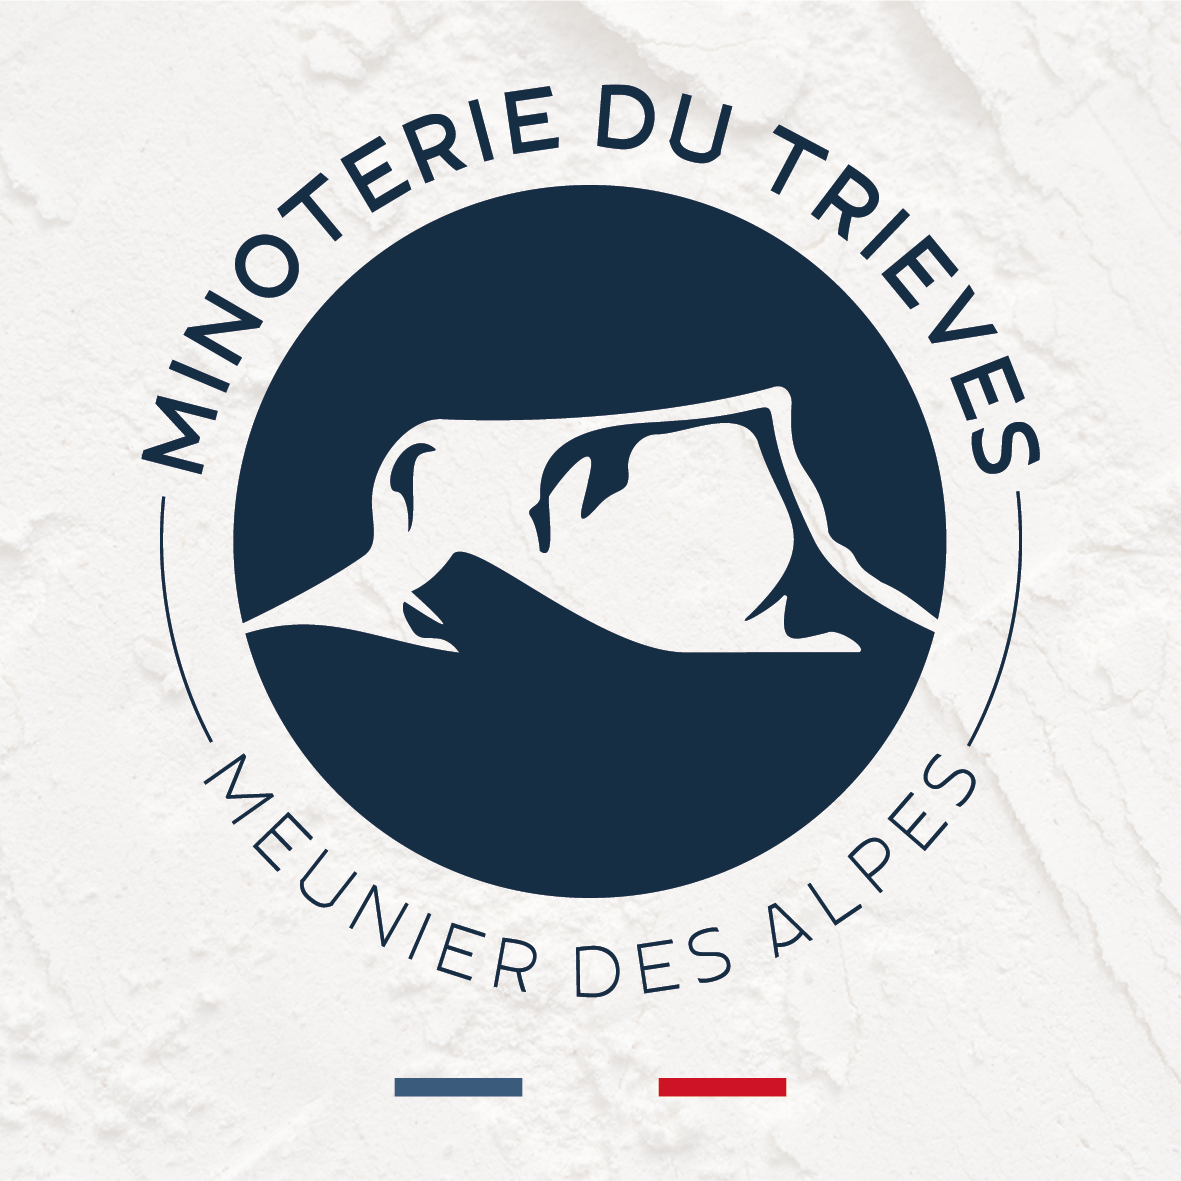 Submarks créés pour la boulangerie Maison Antoine à Nantes